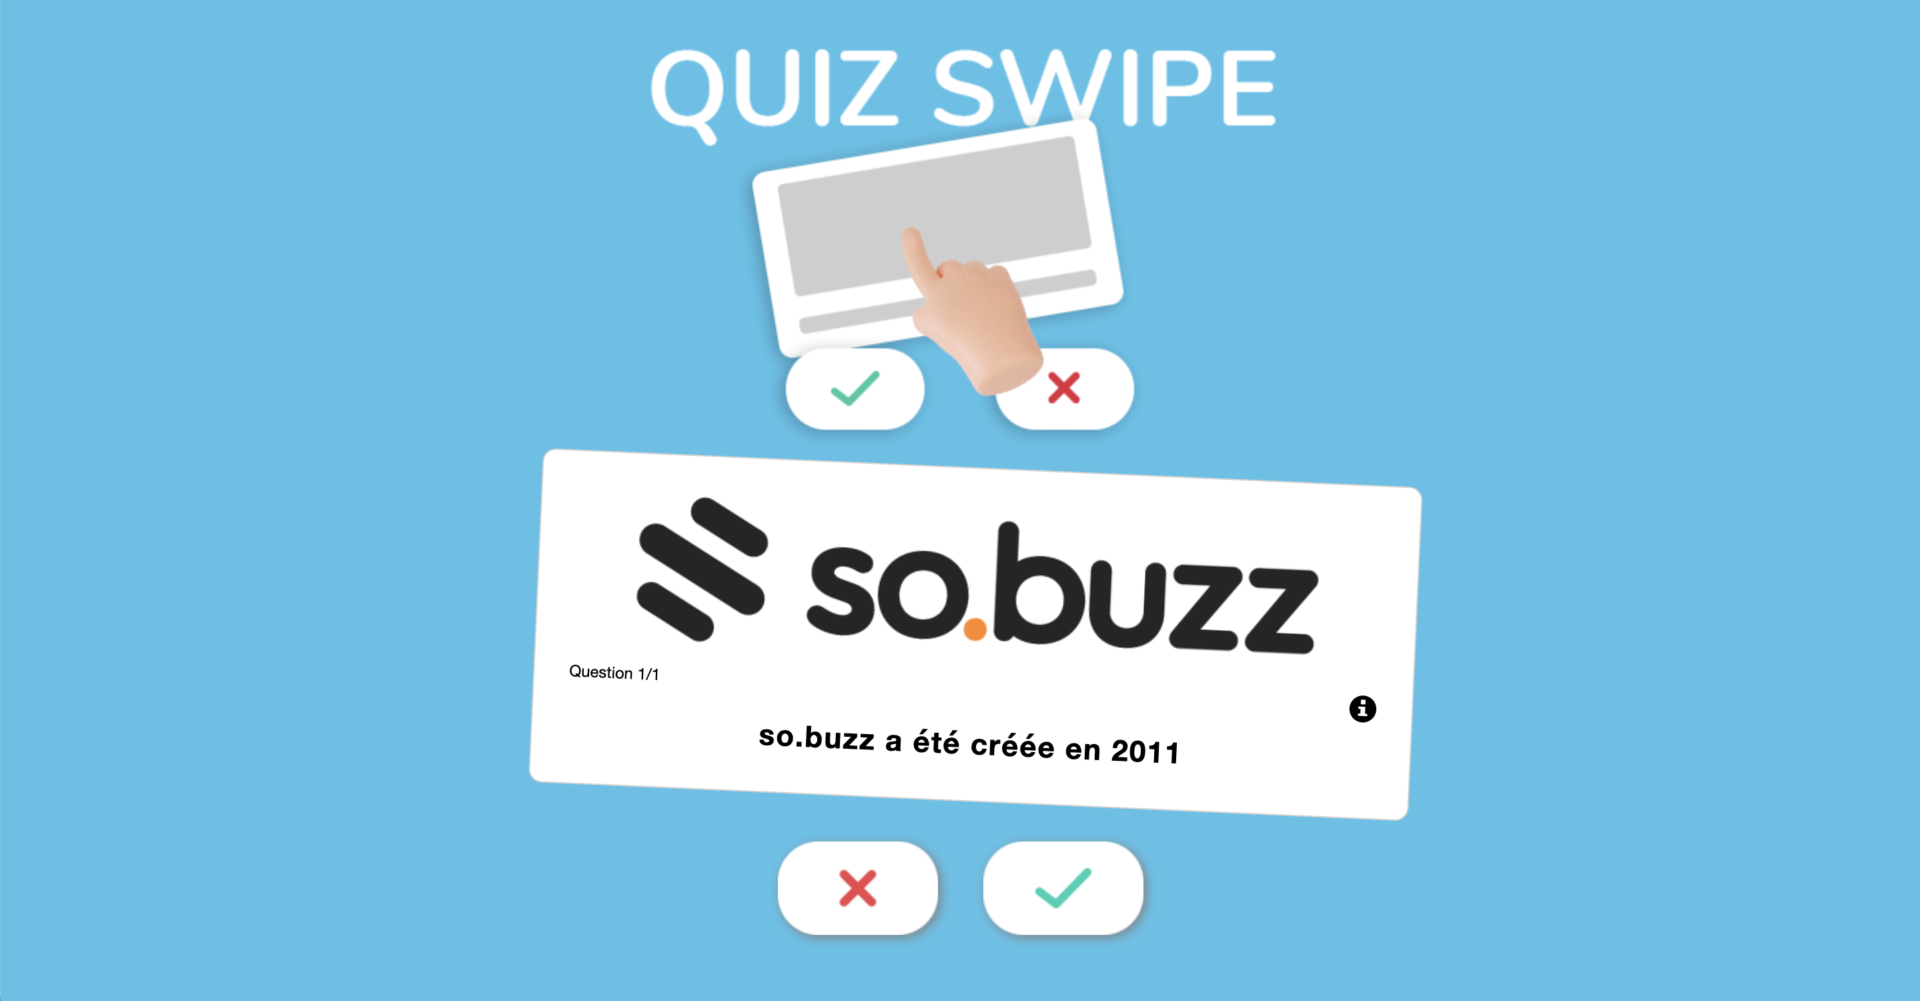 Exemple jeu concours Quiz swipe